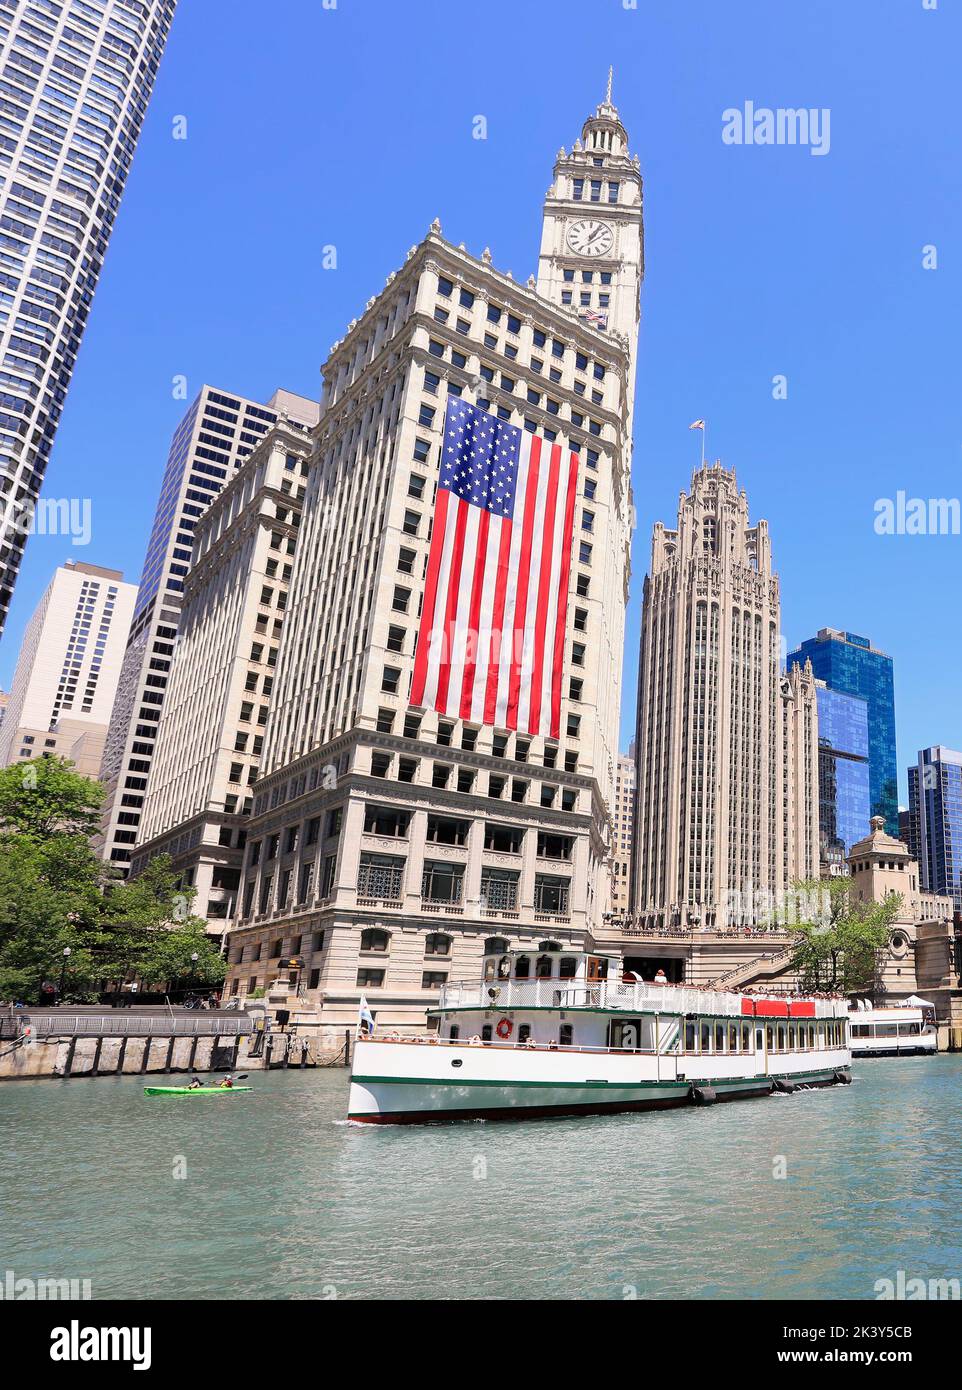 Croisière touristique de Chicago et gratte-ciel sur la rivière, y compris un énorme drapeau américain, Illinois, États-Unis Banque D'Images